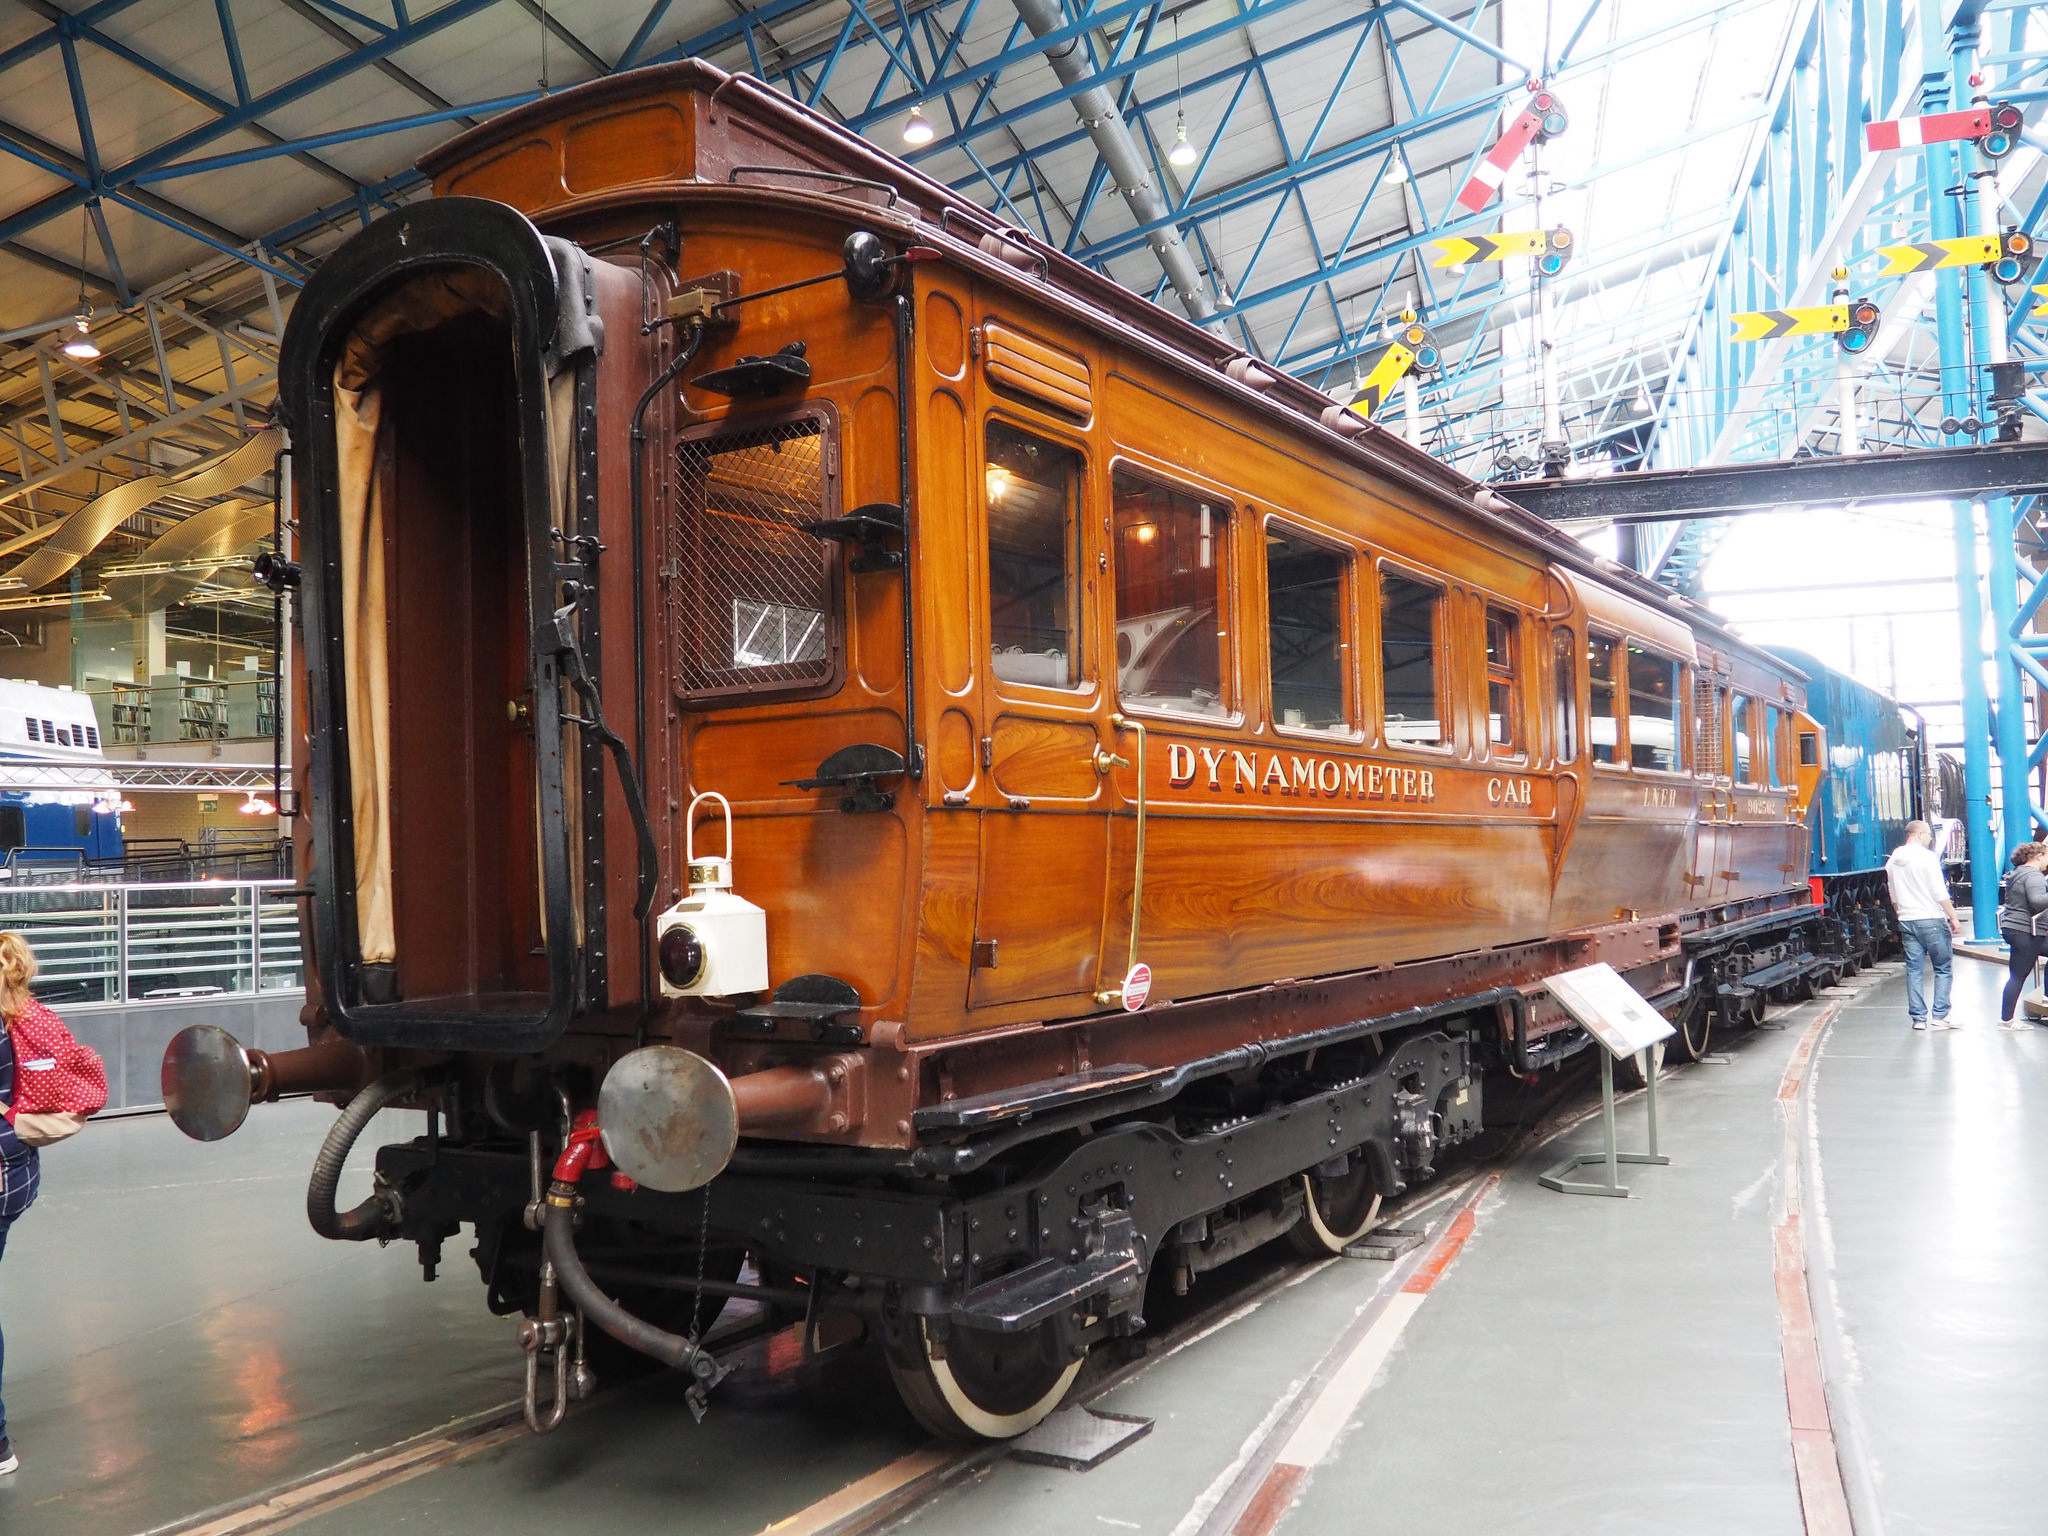 national railway museum6 National Railway Museum in York